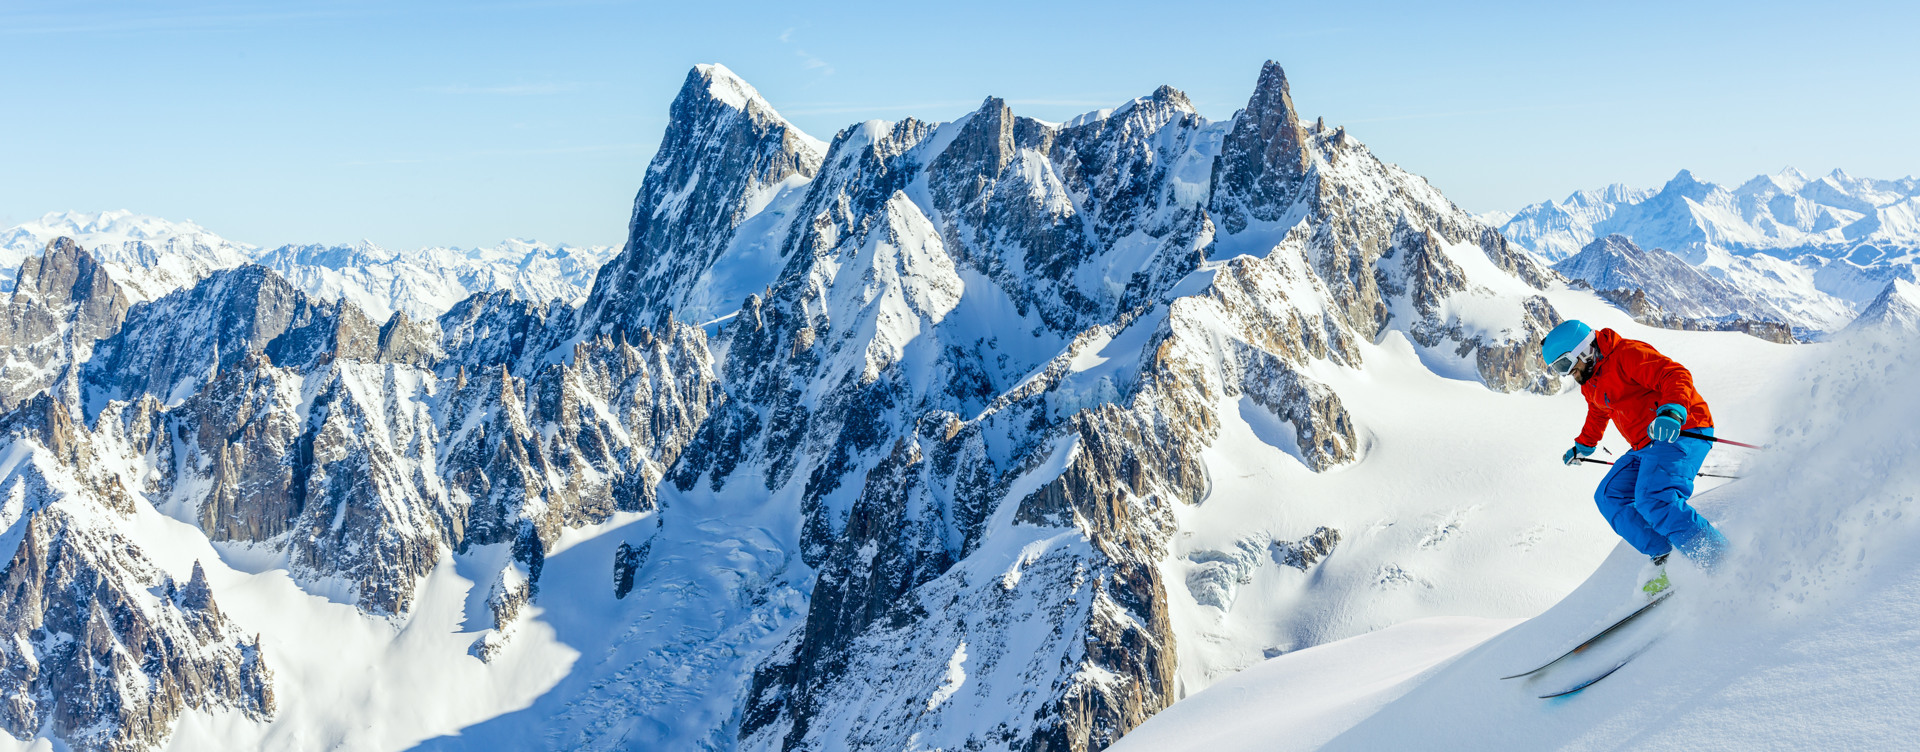 Passez un hiver inoubliable dans la magnifique région des Alpes